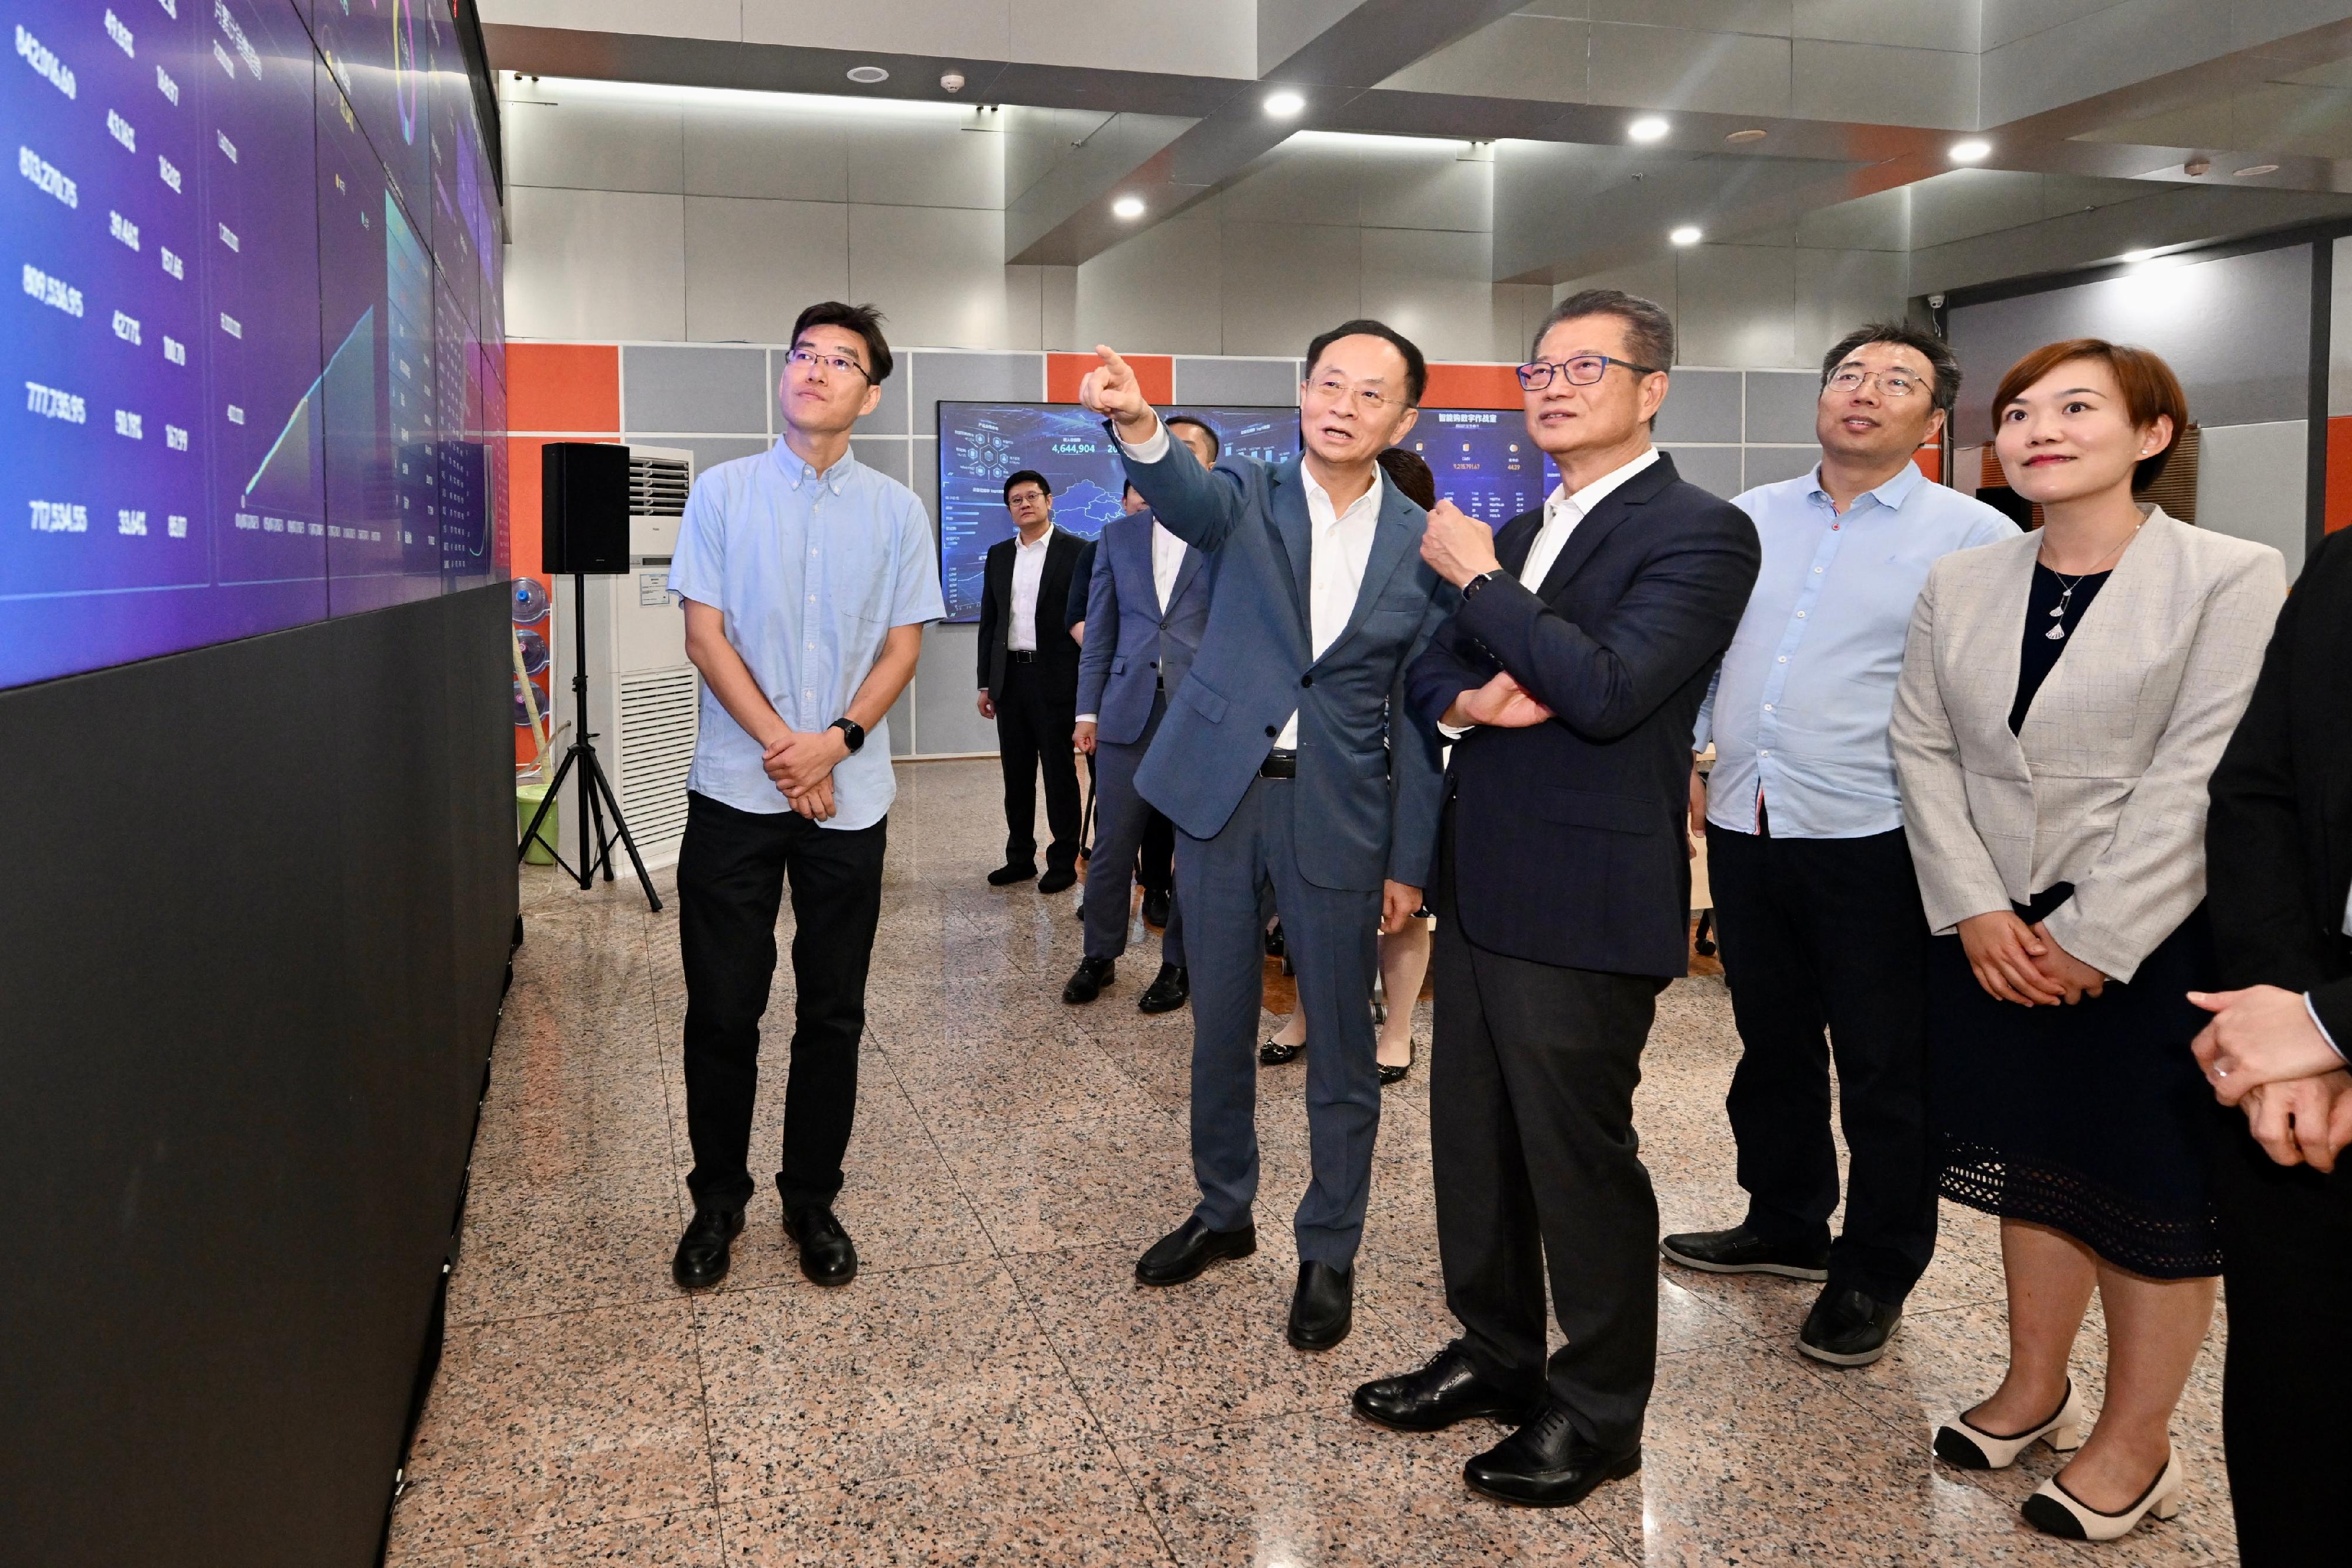 財政司司長陳茂波今日（七月十二日）繼續訪問北京的行程。圖示陳茂波（左三）參觀一家領先的零售雲解決方案服務商，了解相關服務如何利用大數據、雲端運算和人工智慧等技術，助力零售商進行數碼化轉型。